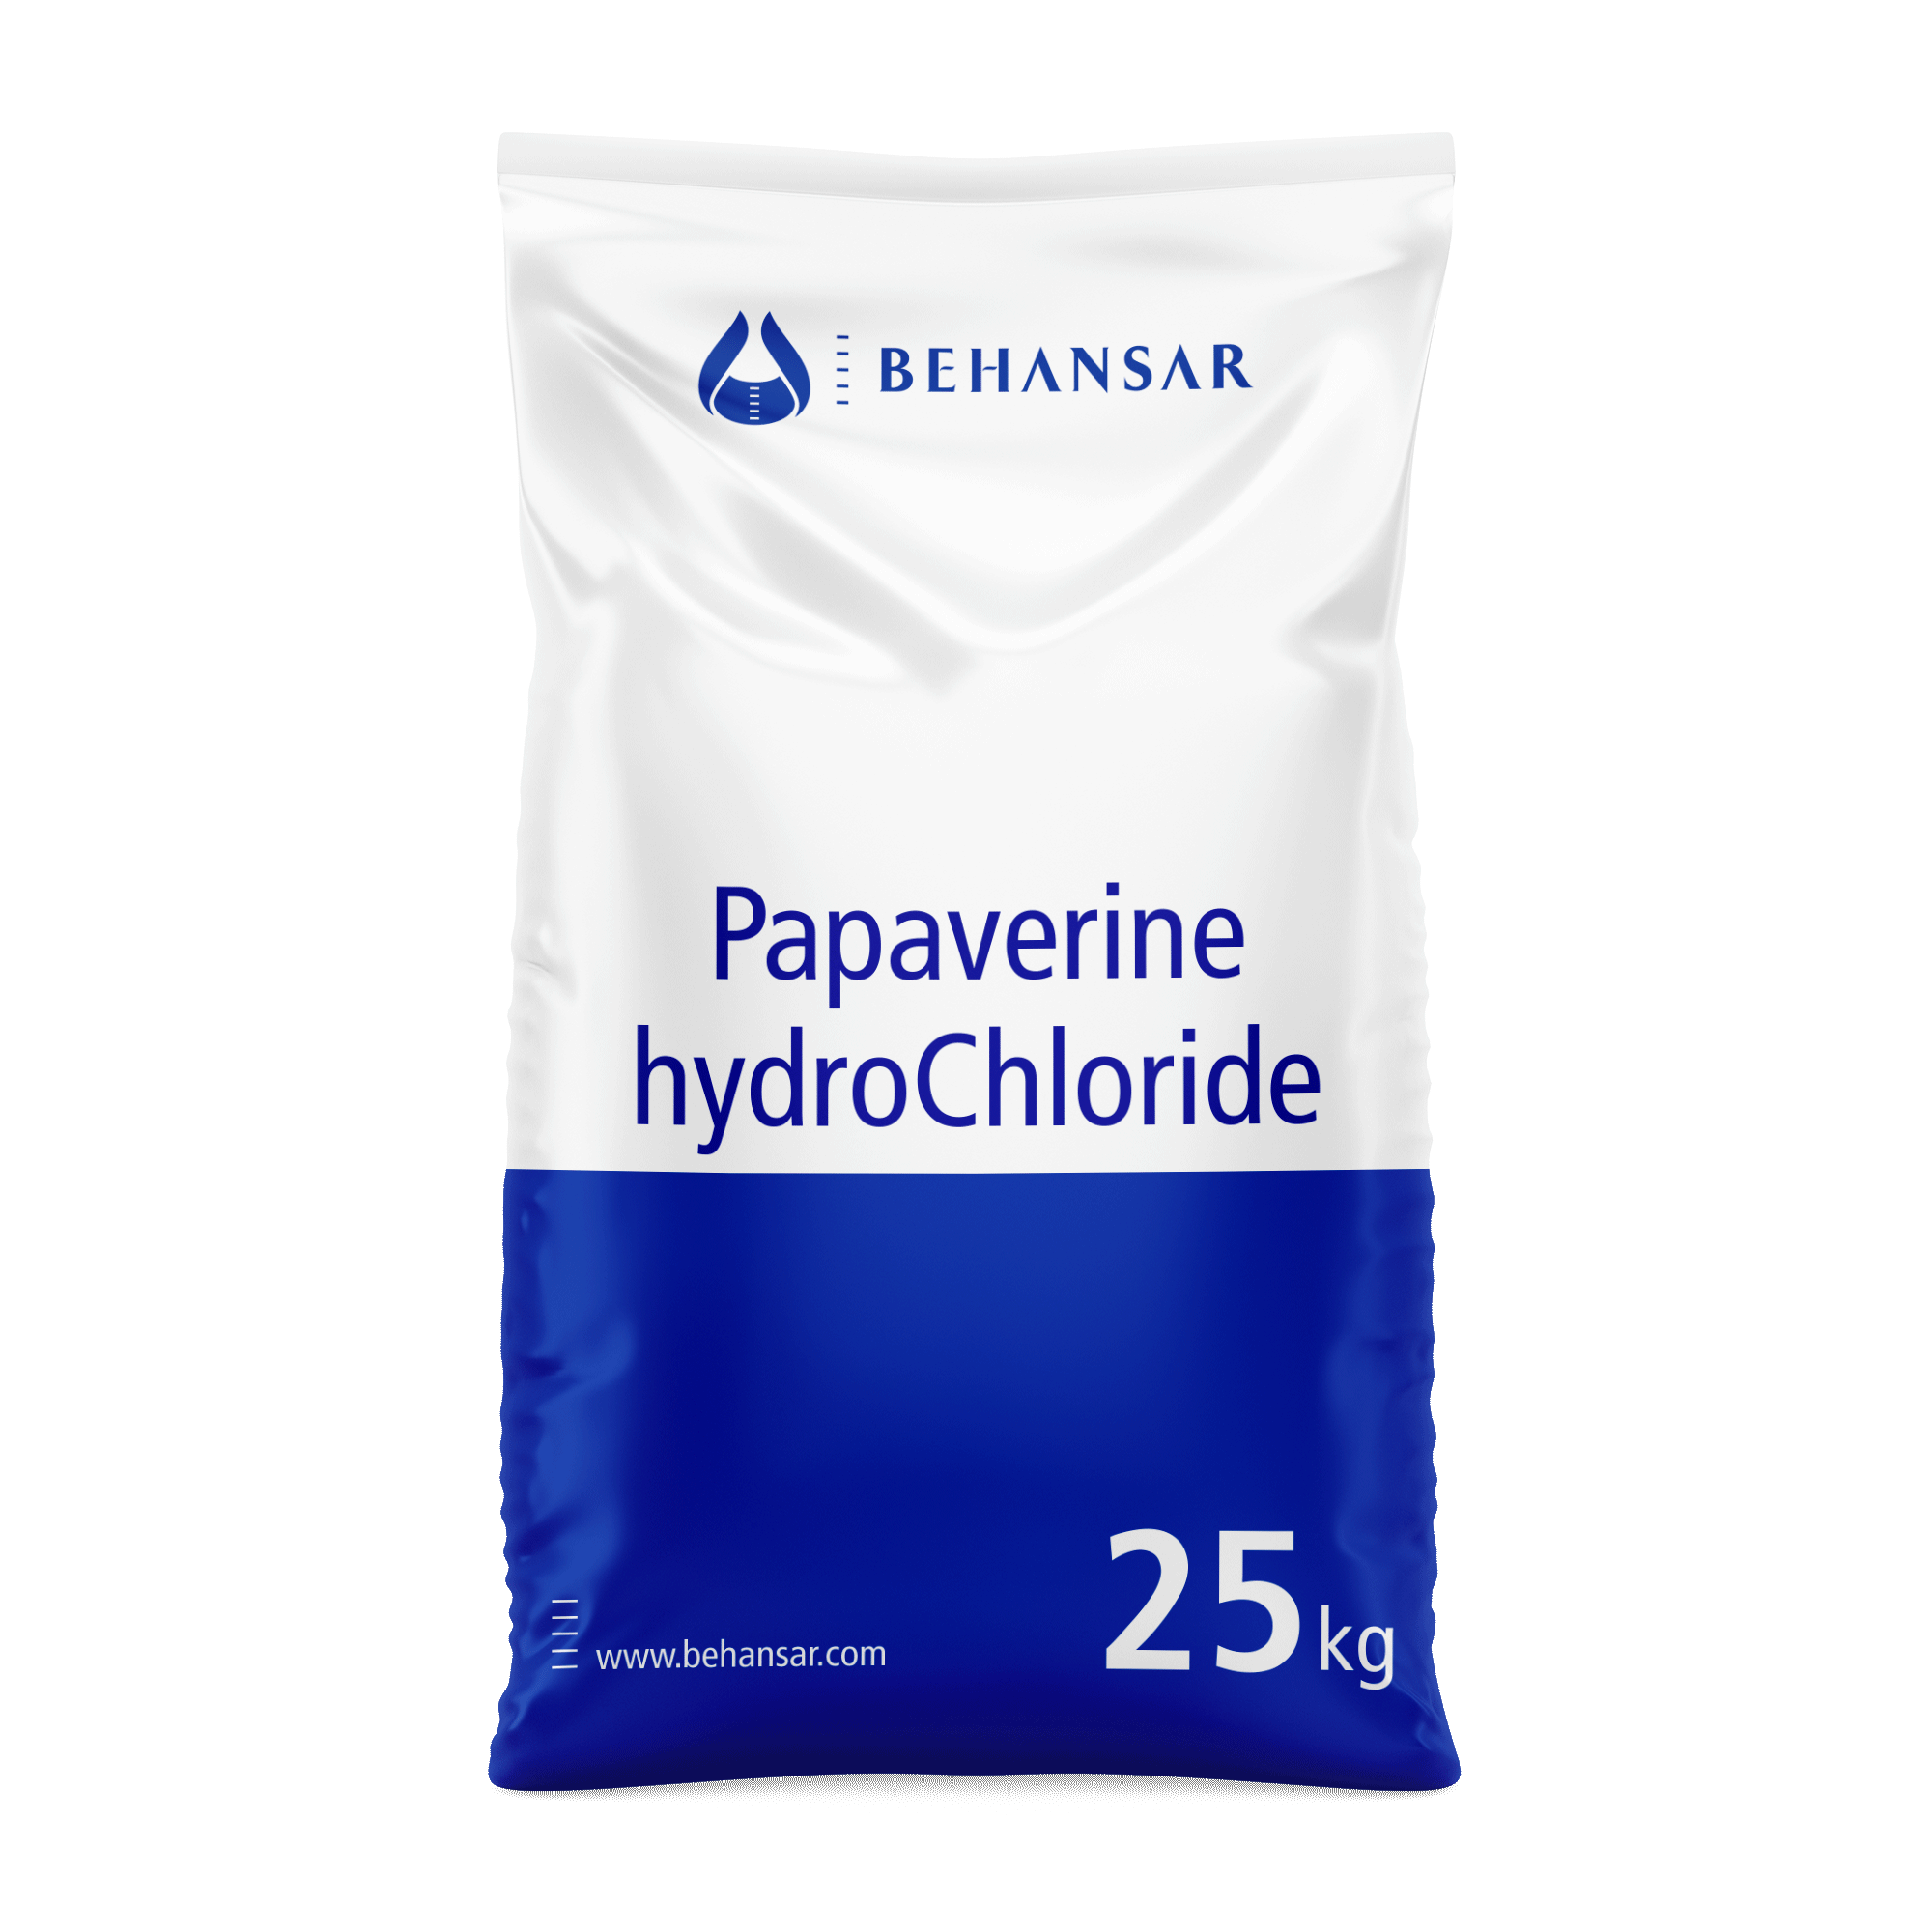 پاپاورین هیدروکلراید یکی از تولیدات شرکت بهانسار است